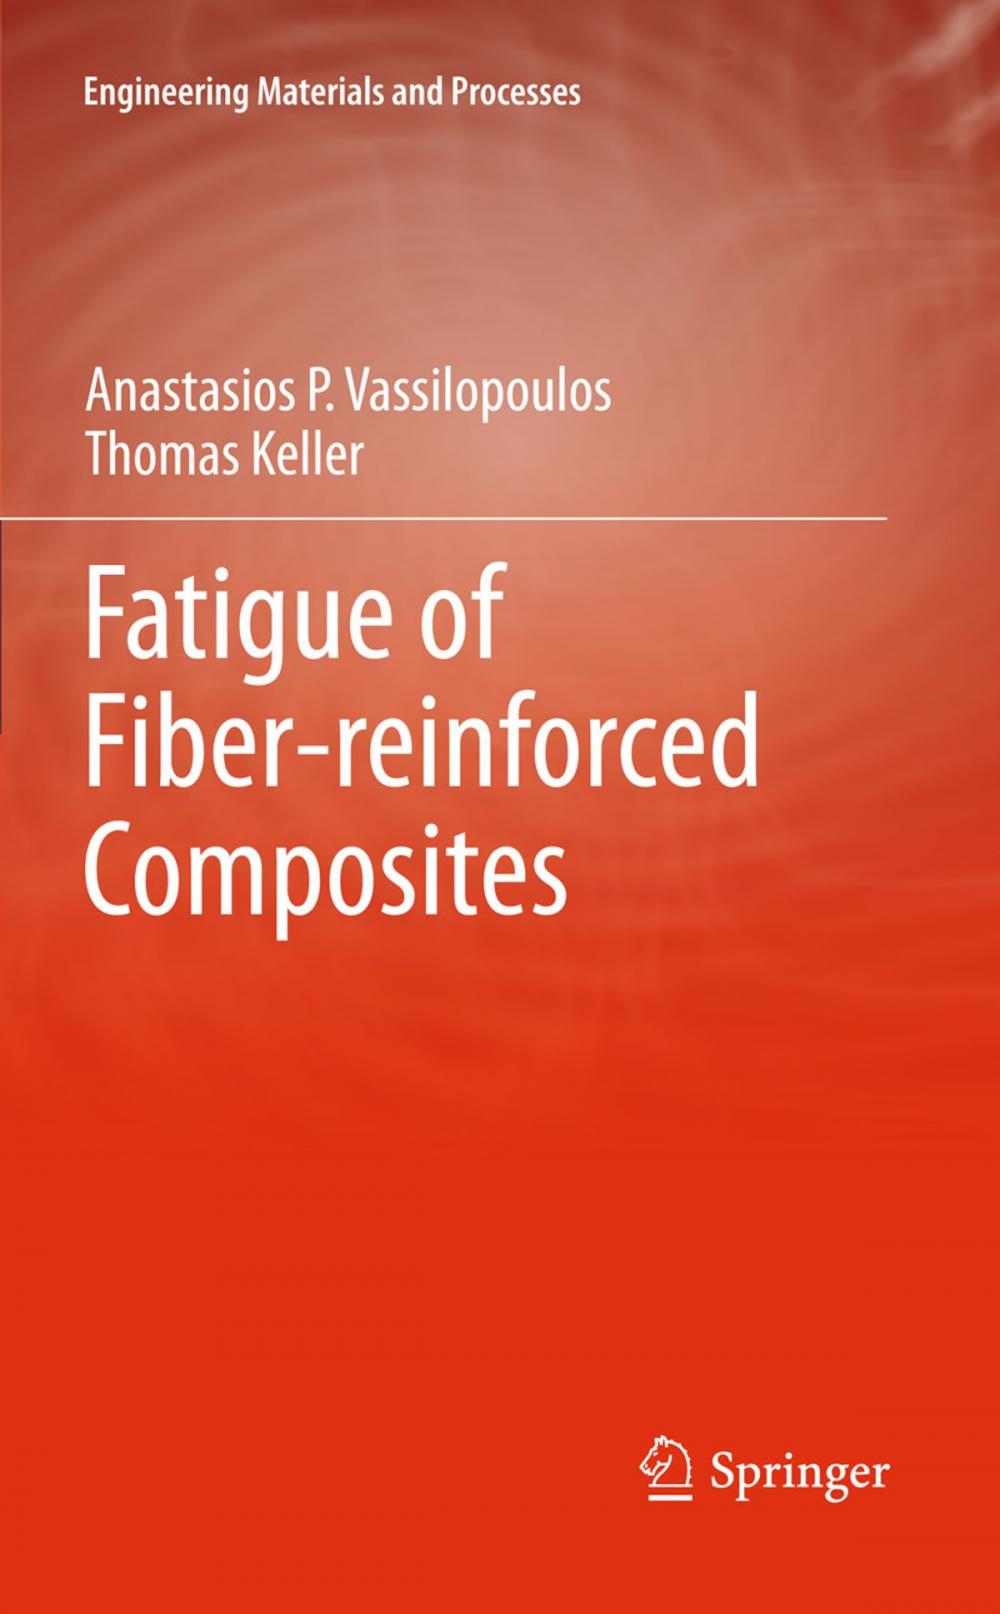 Big bigCover of Fatigue of Fiber-reinforced Composites